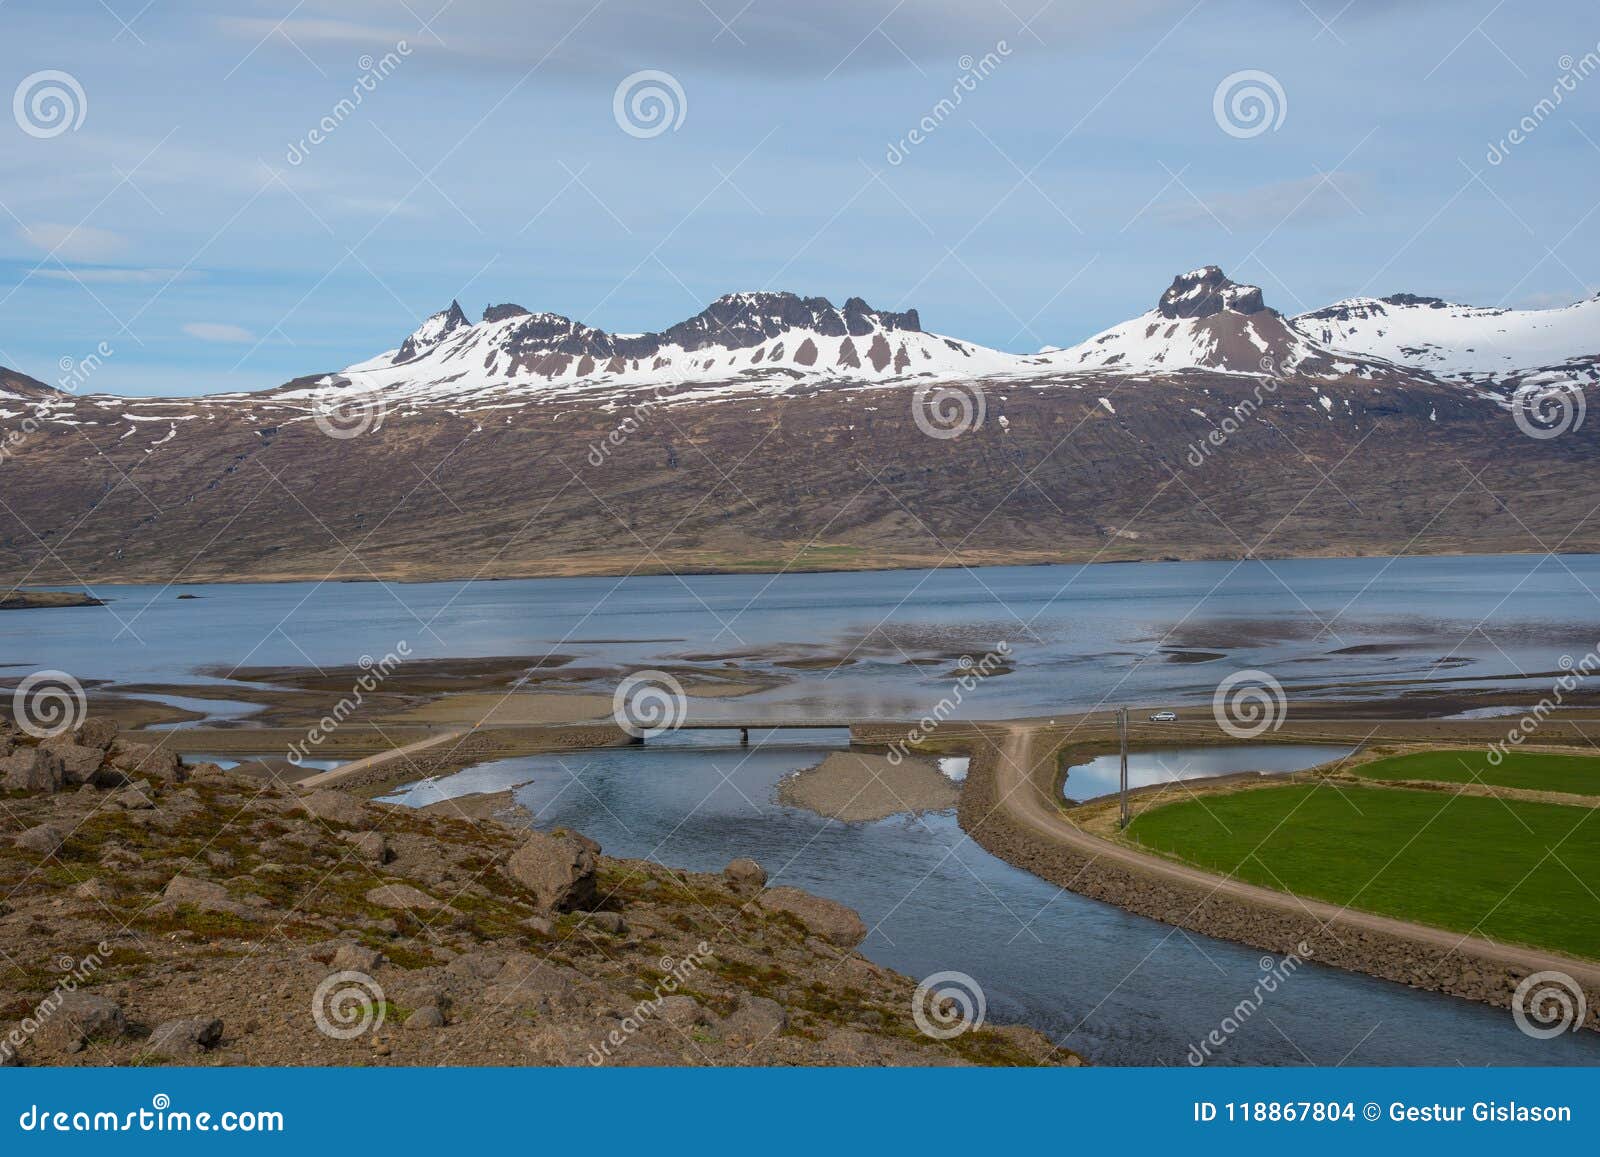 berufjordur fjord in east iceland